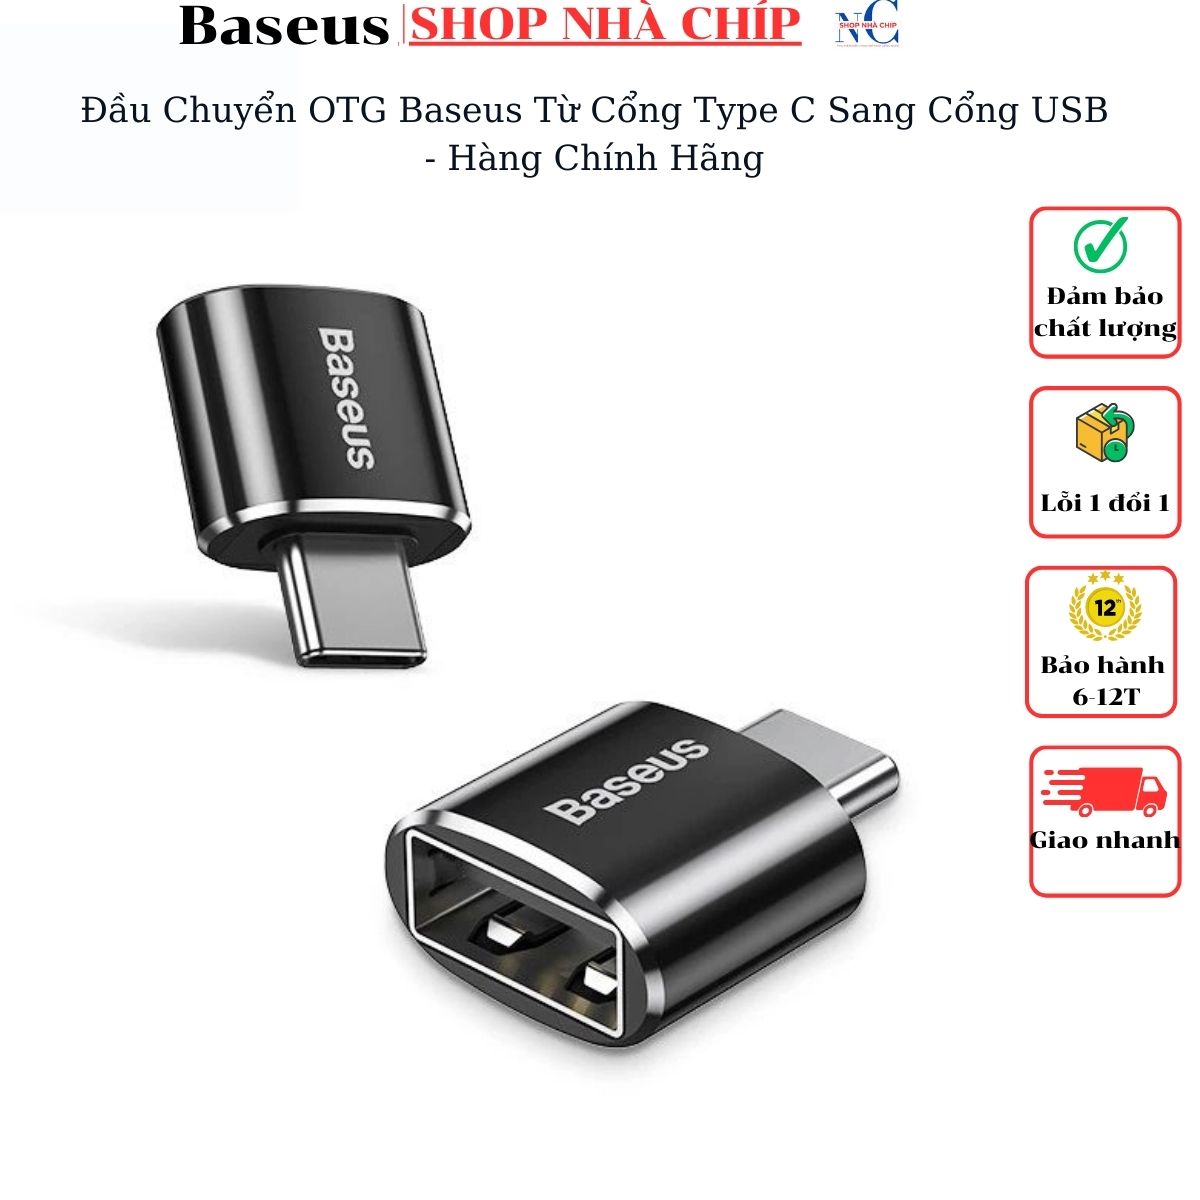 Hình ảnh Đầu Chuyển OTG Baseus Từ Cổng Type C Sang Cổng USB - Hàng Chính Hãng